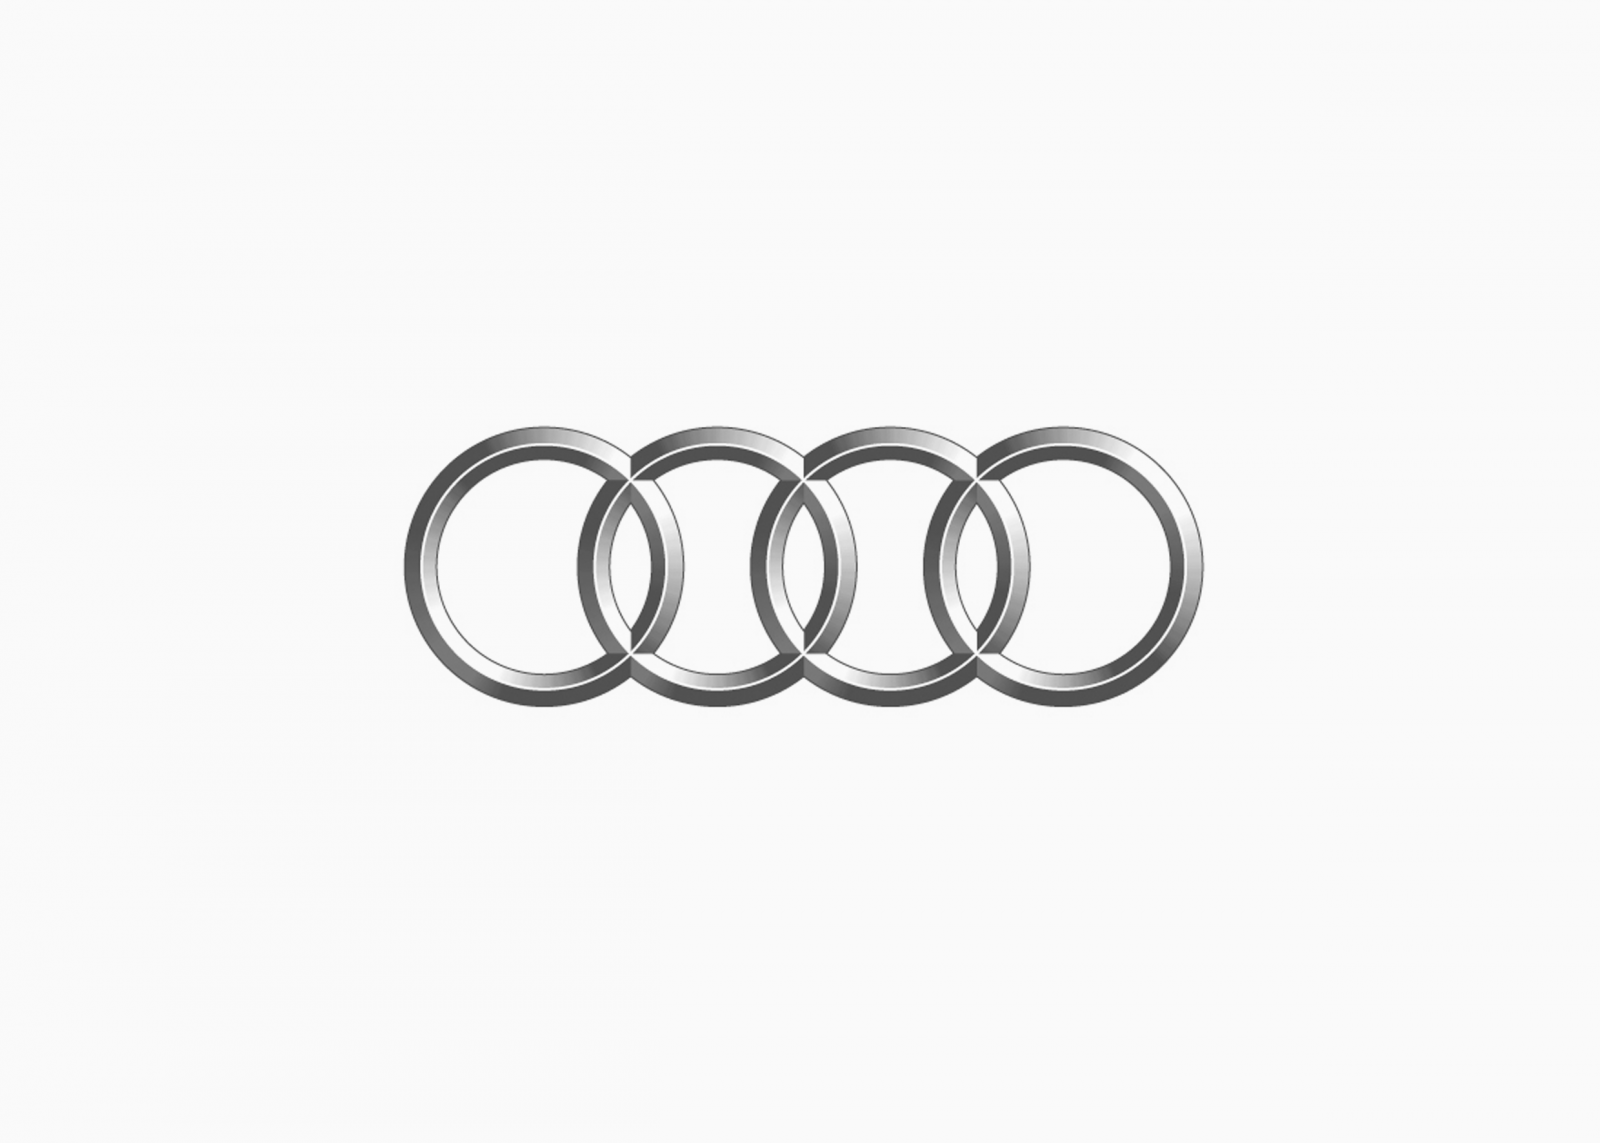 История логотипа Ауди: развитие и эволюция бренда | Дизайн, лого и ...